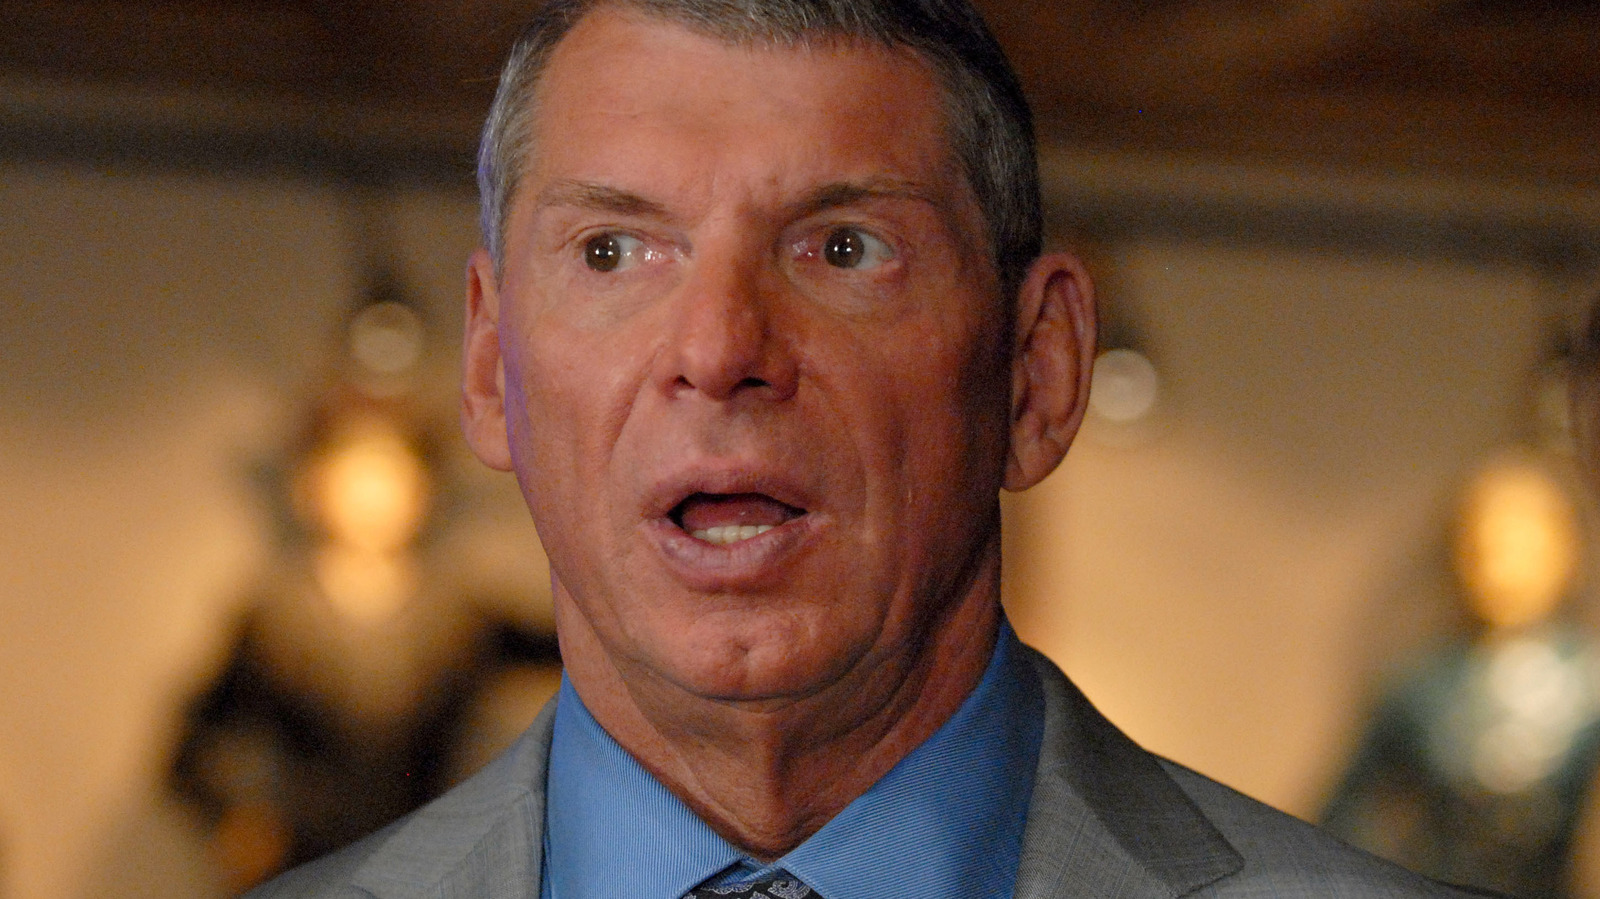 'Huellas dactilares de Vince McMahon' supuestamente en todo el episodio de esta noche de WWE Raw